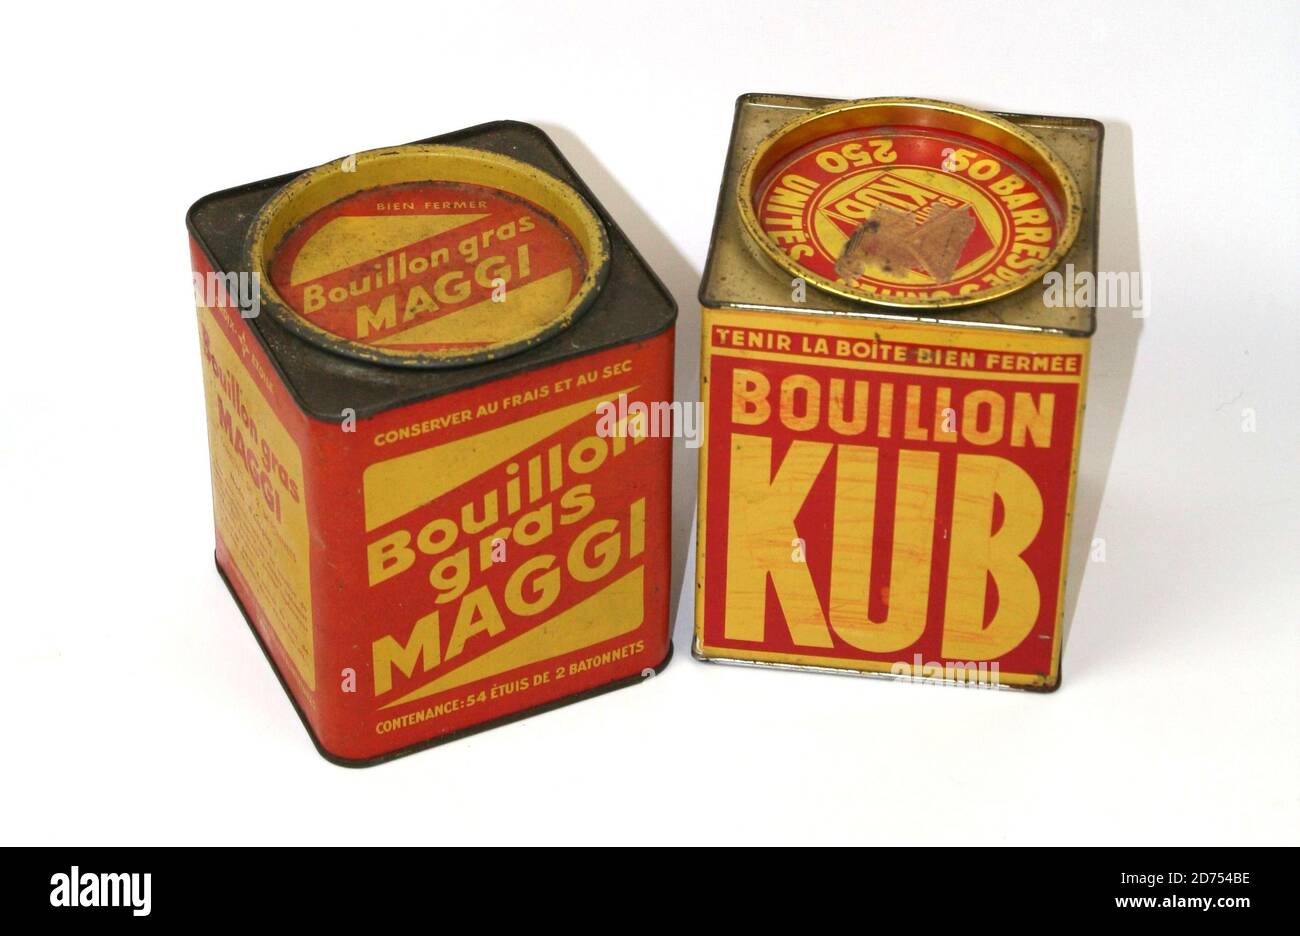 Boites de bouillon KUB et Maggi vers 1950 Banque D'Images